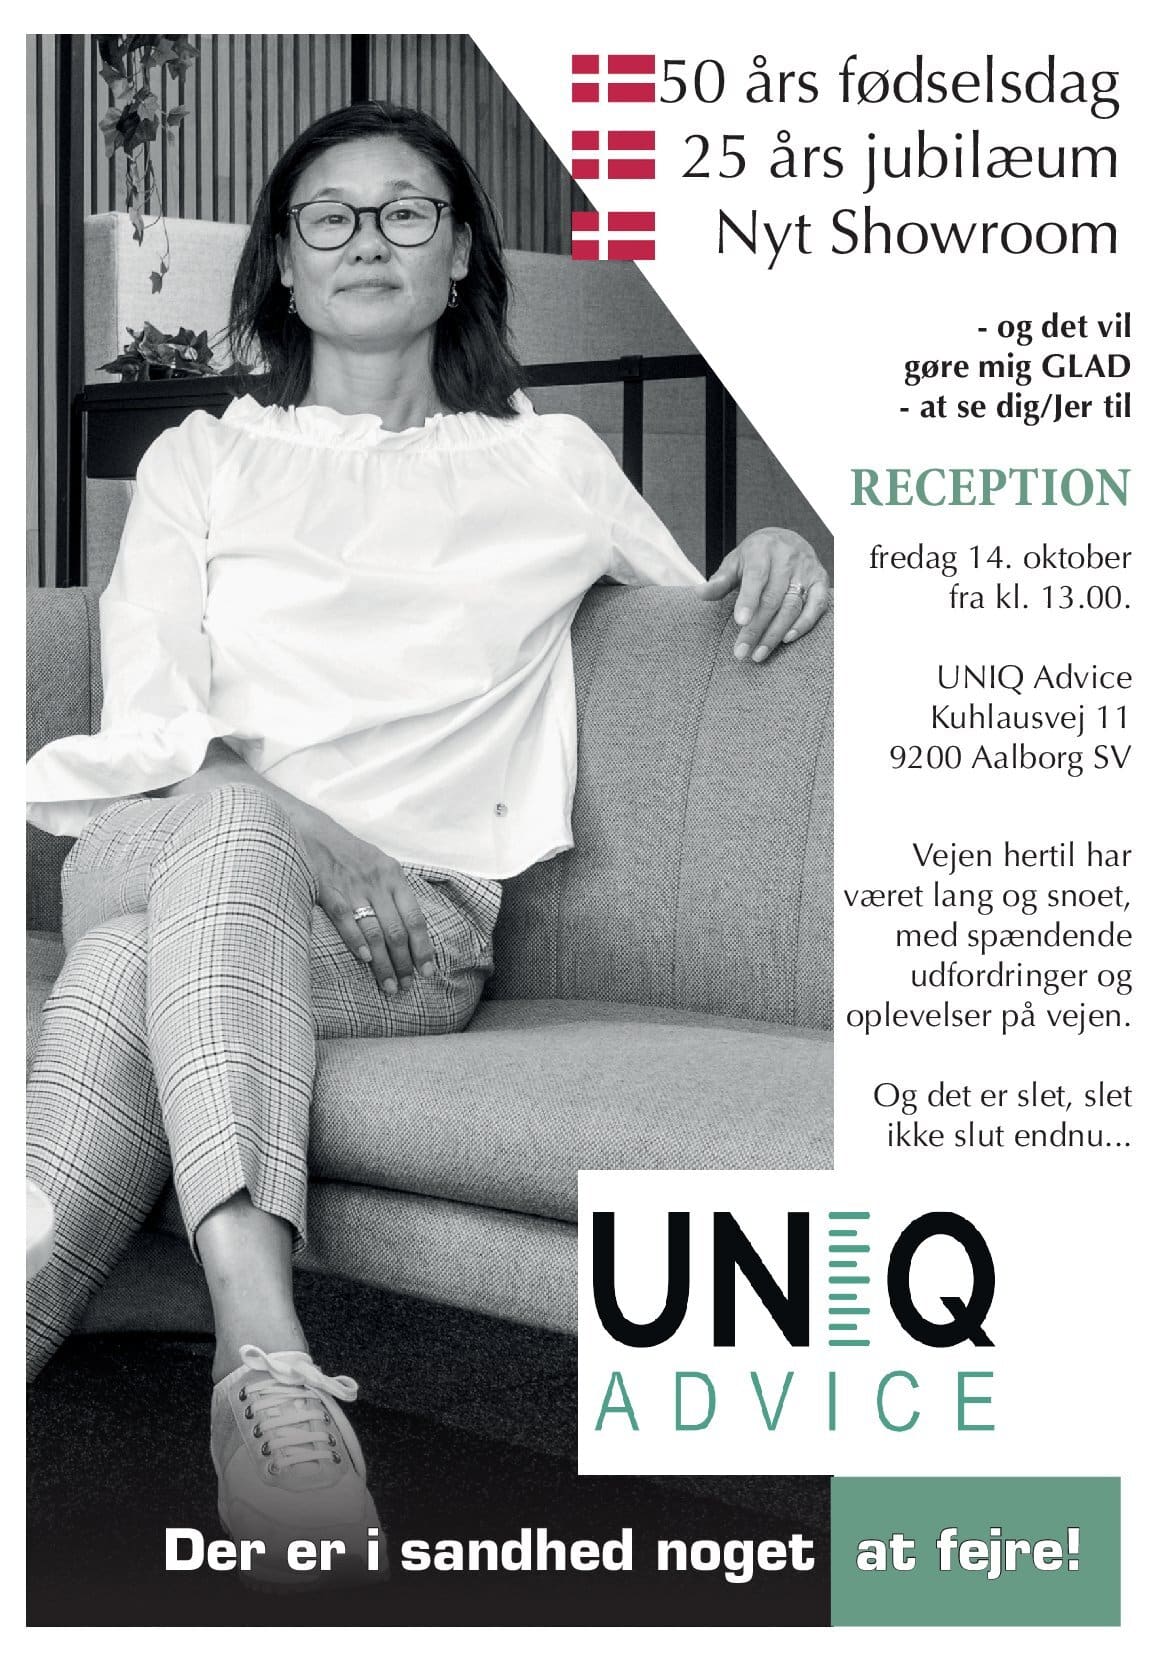 Der er i sandhed noget at fejre!

Uniq Advice inviterer derfor til reception fredag d.14 oktober fra kl. 13.

Kuhlausvej 11, 9200 Aalborg SV